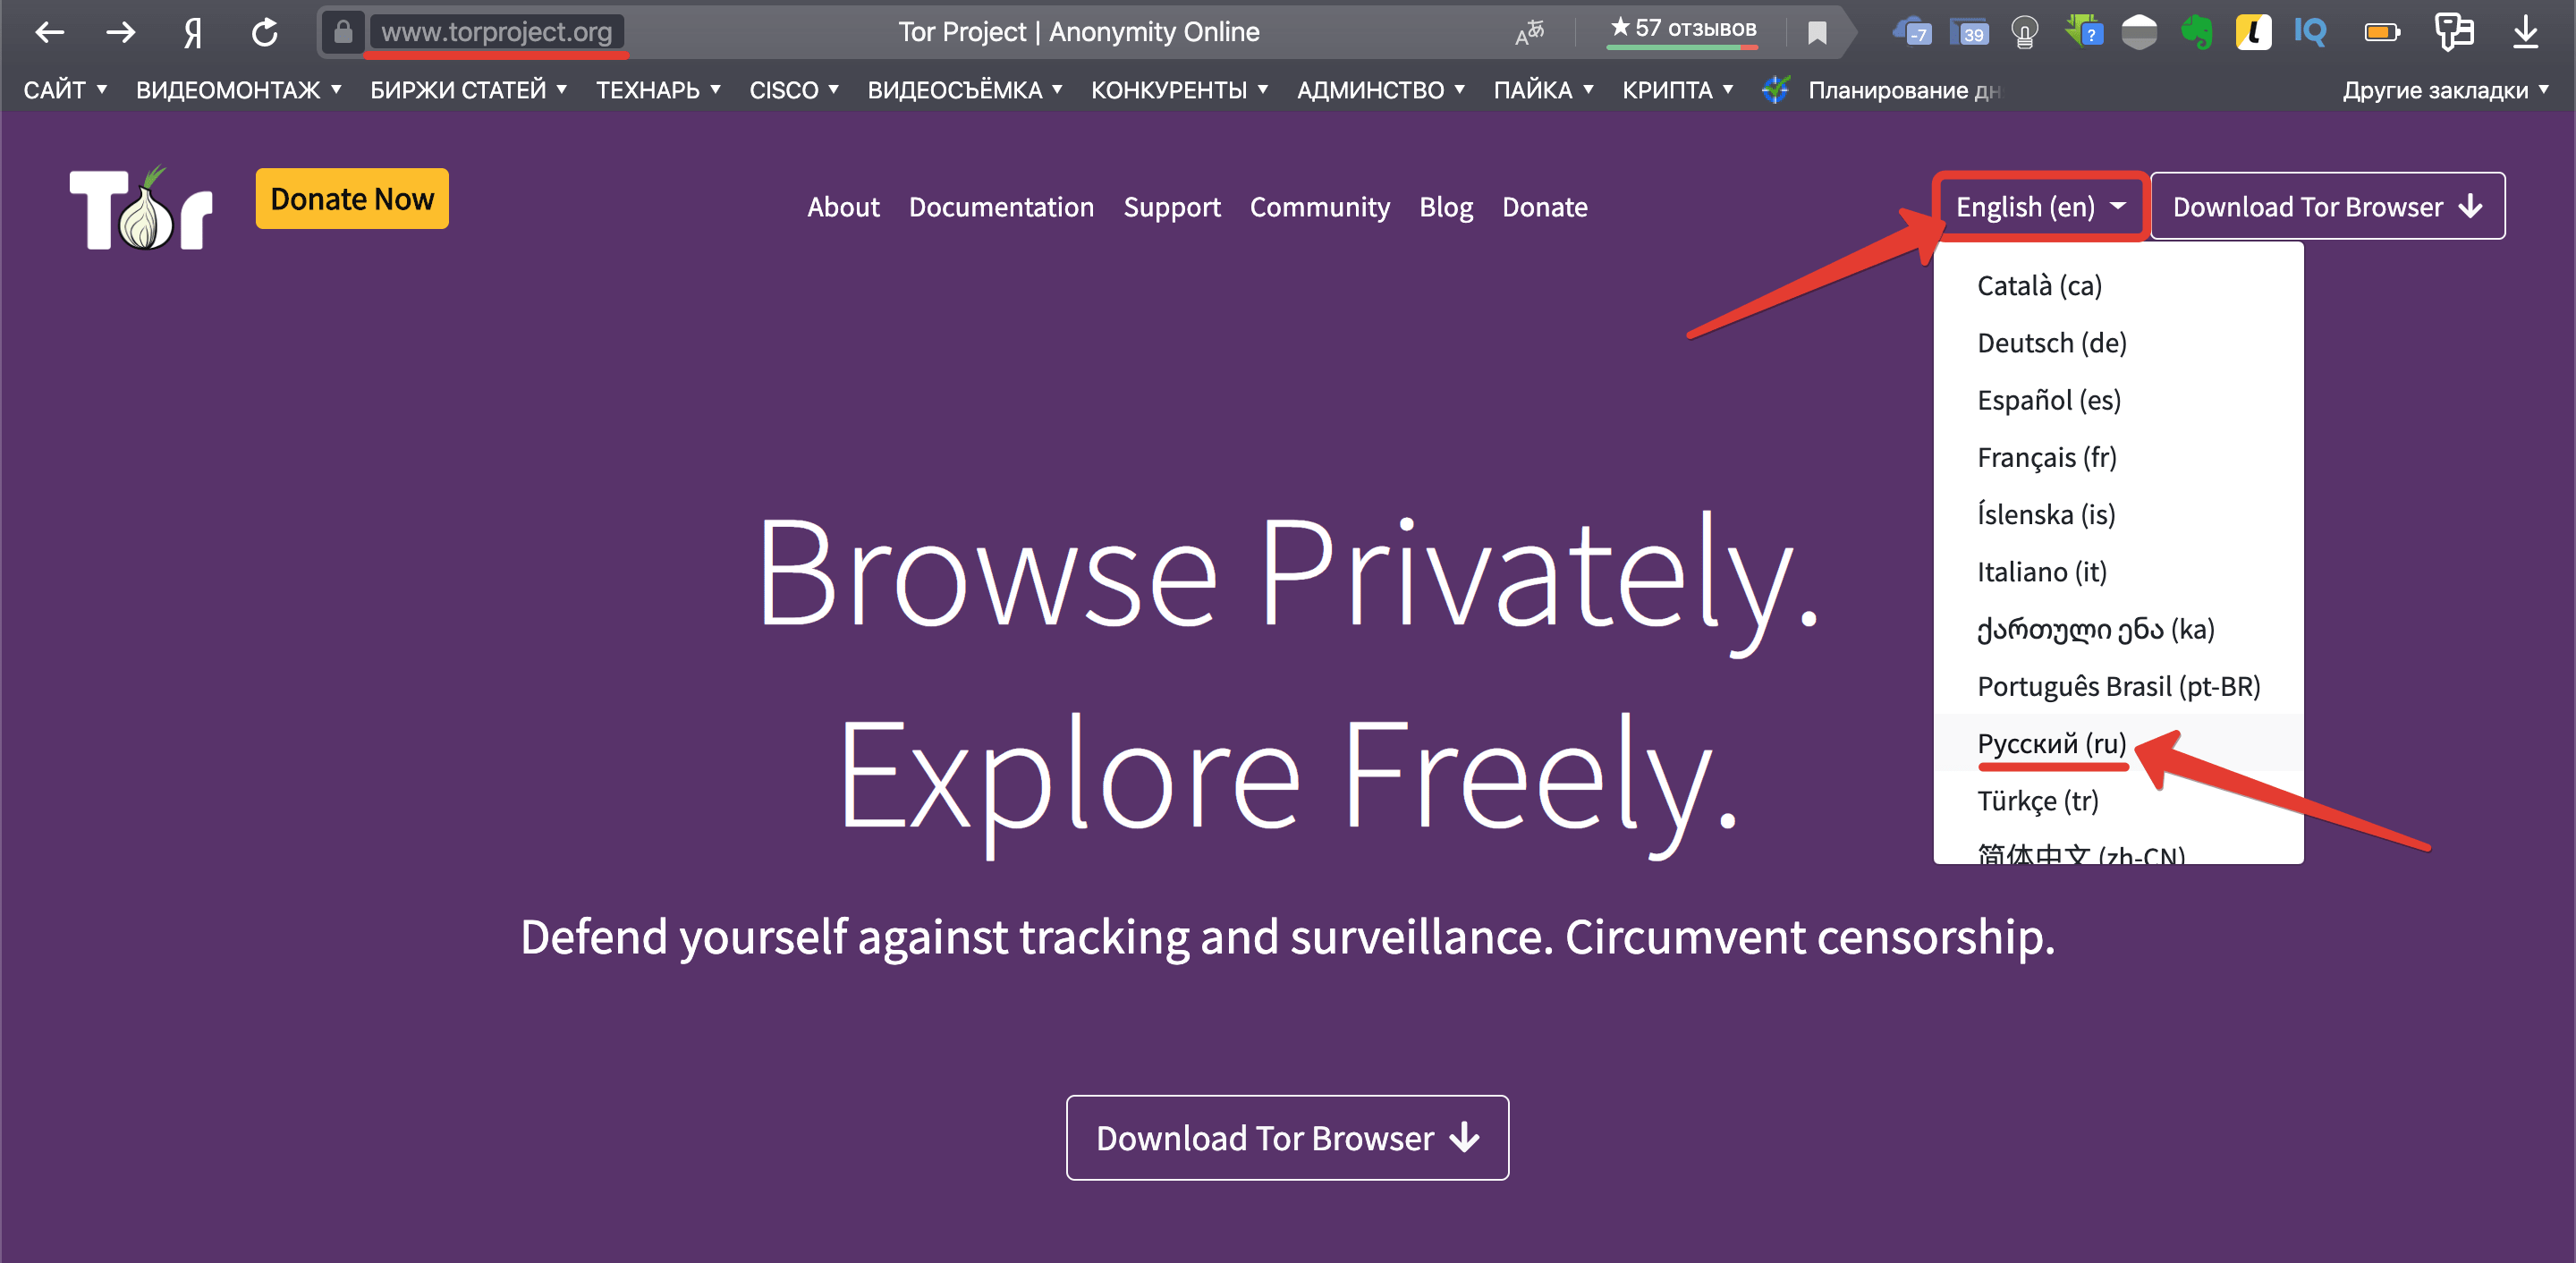 Как войти на даркнет megaruzxpnew4af tor browser для ipad скачать бесплатно mega